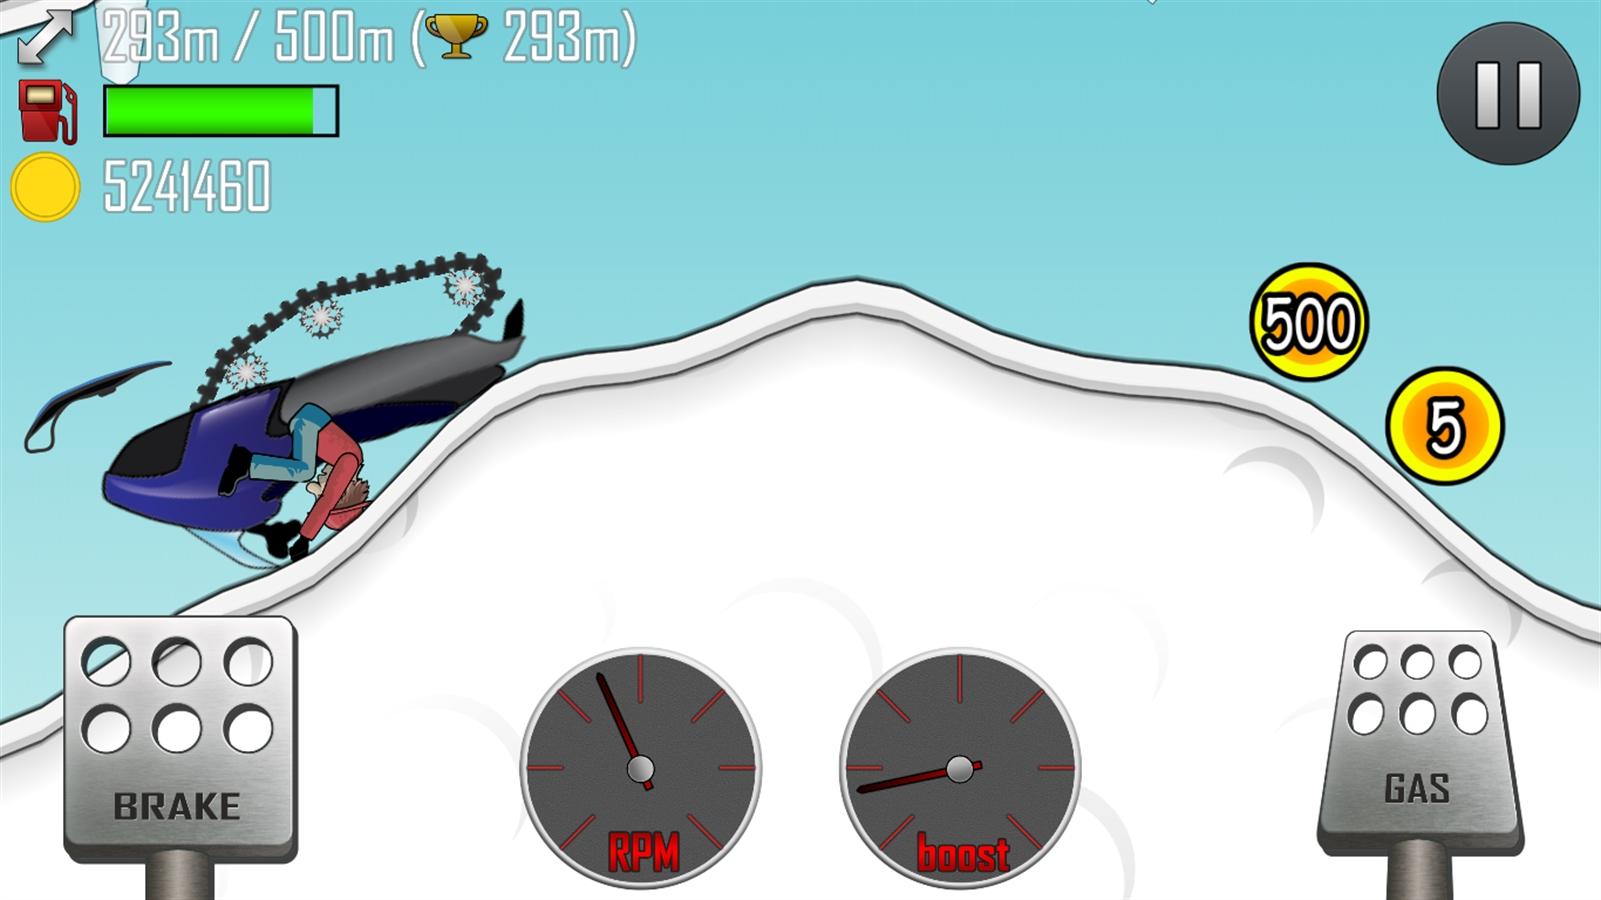 hill climb racing v1.23.0 apk download